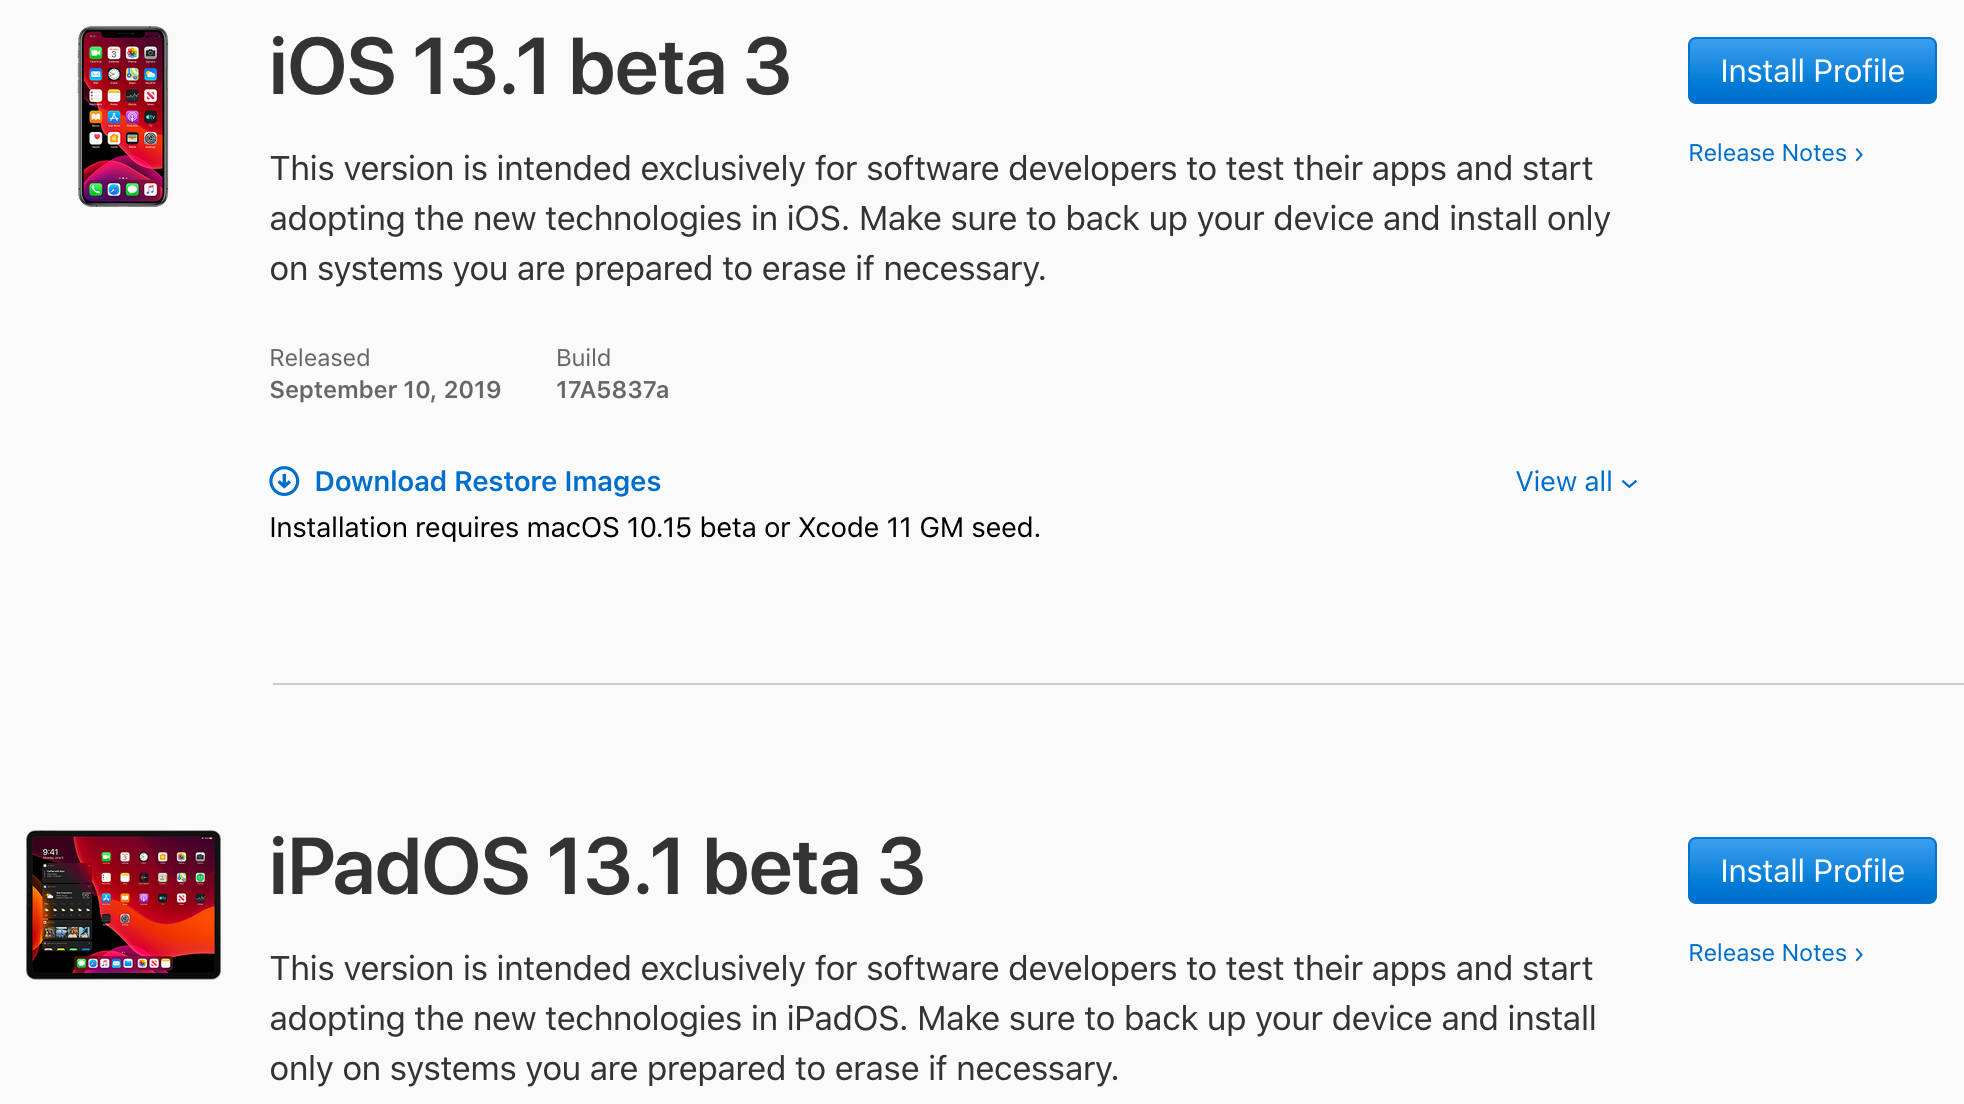 Apple iOS 13.1 beta 3 kiedy premiera aktualizacja iPhone dla wszystkich iPadOS 13.1